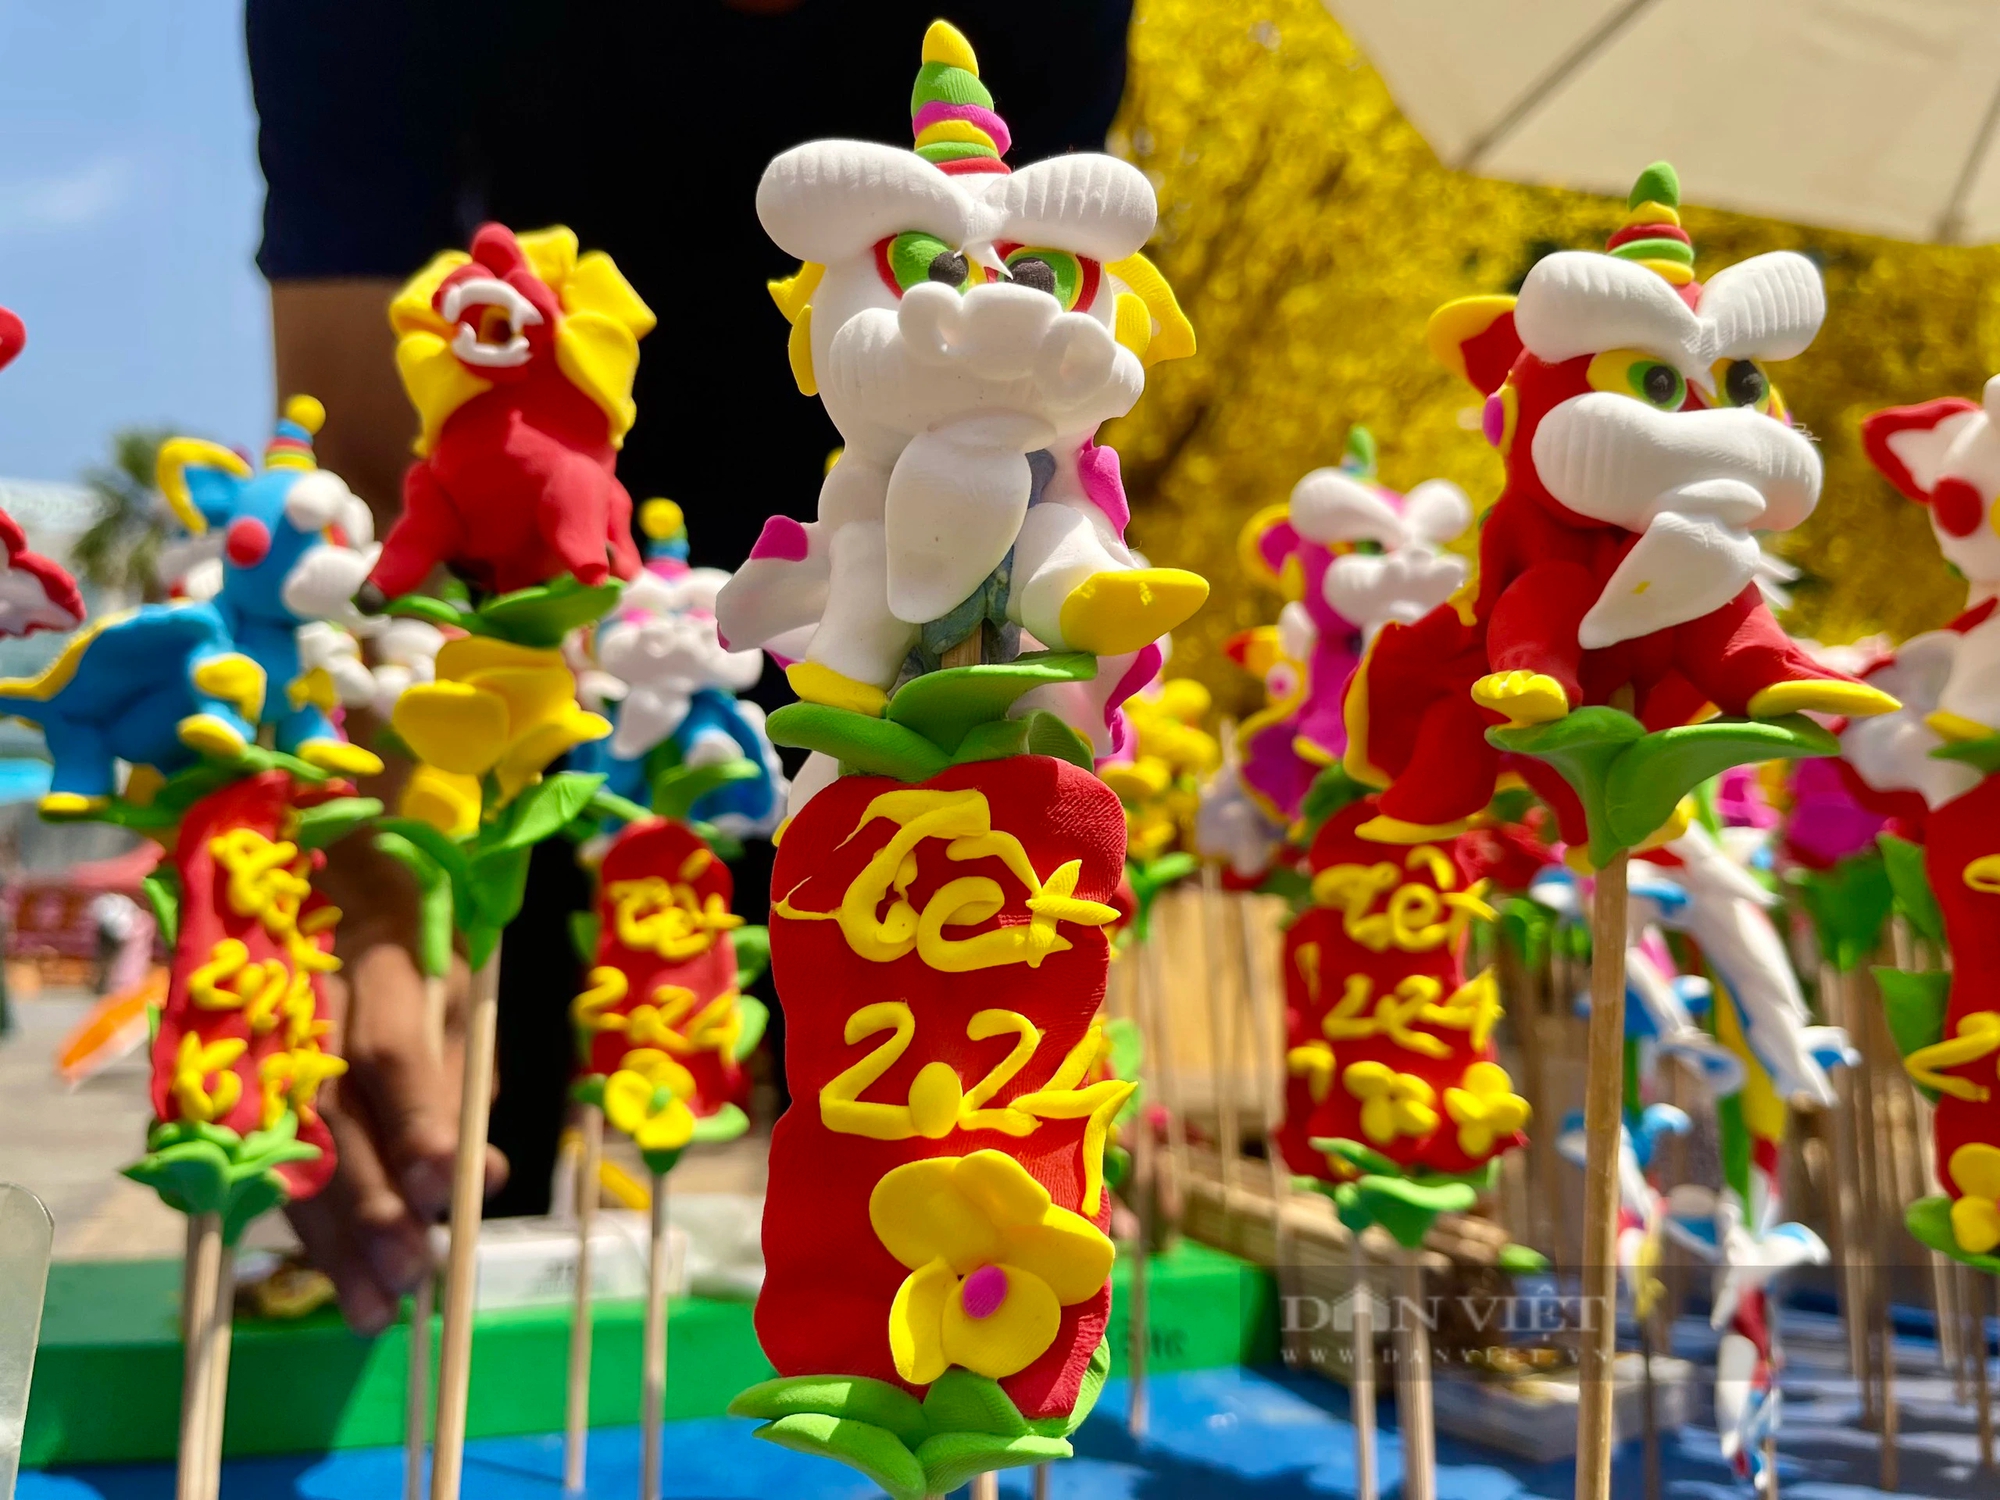 Món đồ chơi bé tí, hình thù đa dạng, sắc màu mê hoặc đang hồi sinh mạnh mẽ giữa phố thị Sài Gòn- Ảnh 7.